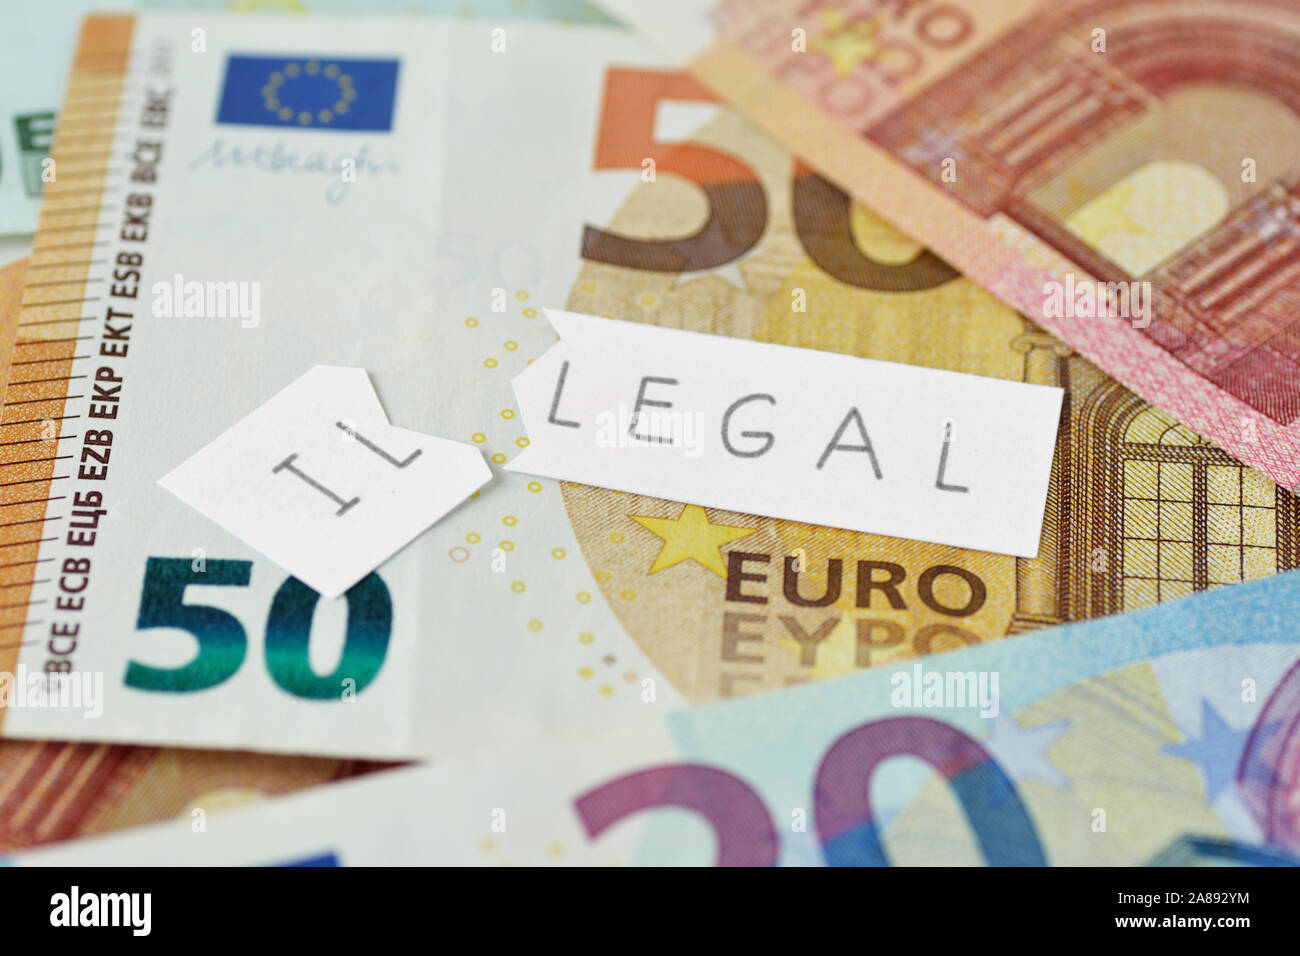 Papier déchiré remarque avec texte illicite sur les billets en euros - Notion de contexte légal et illégal Banque D'Images